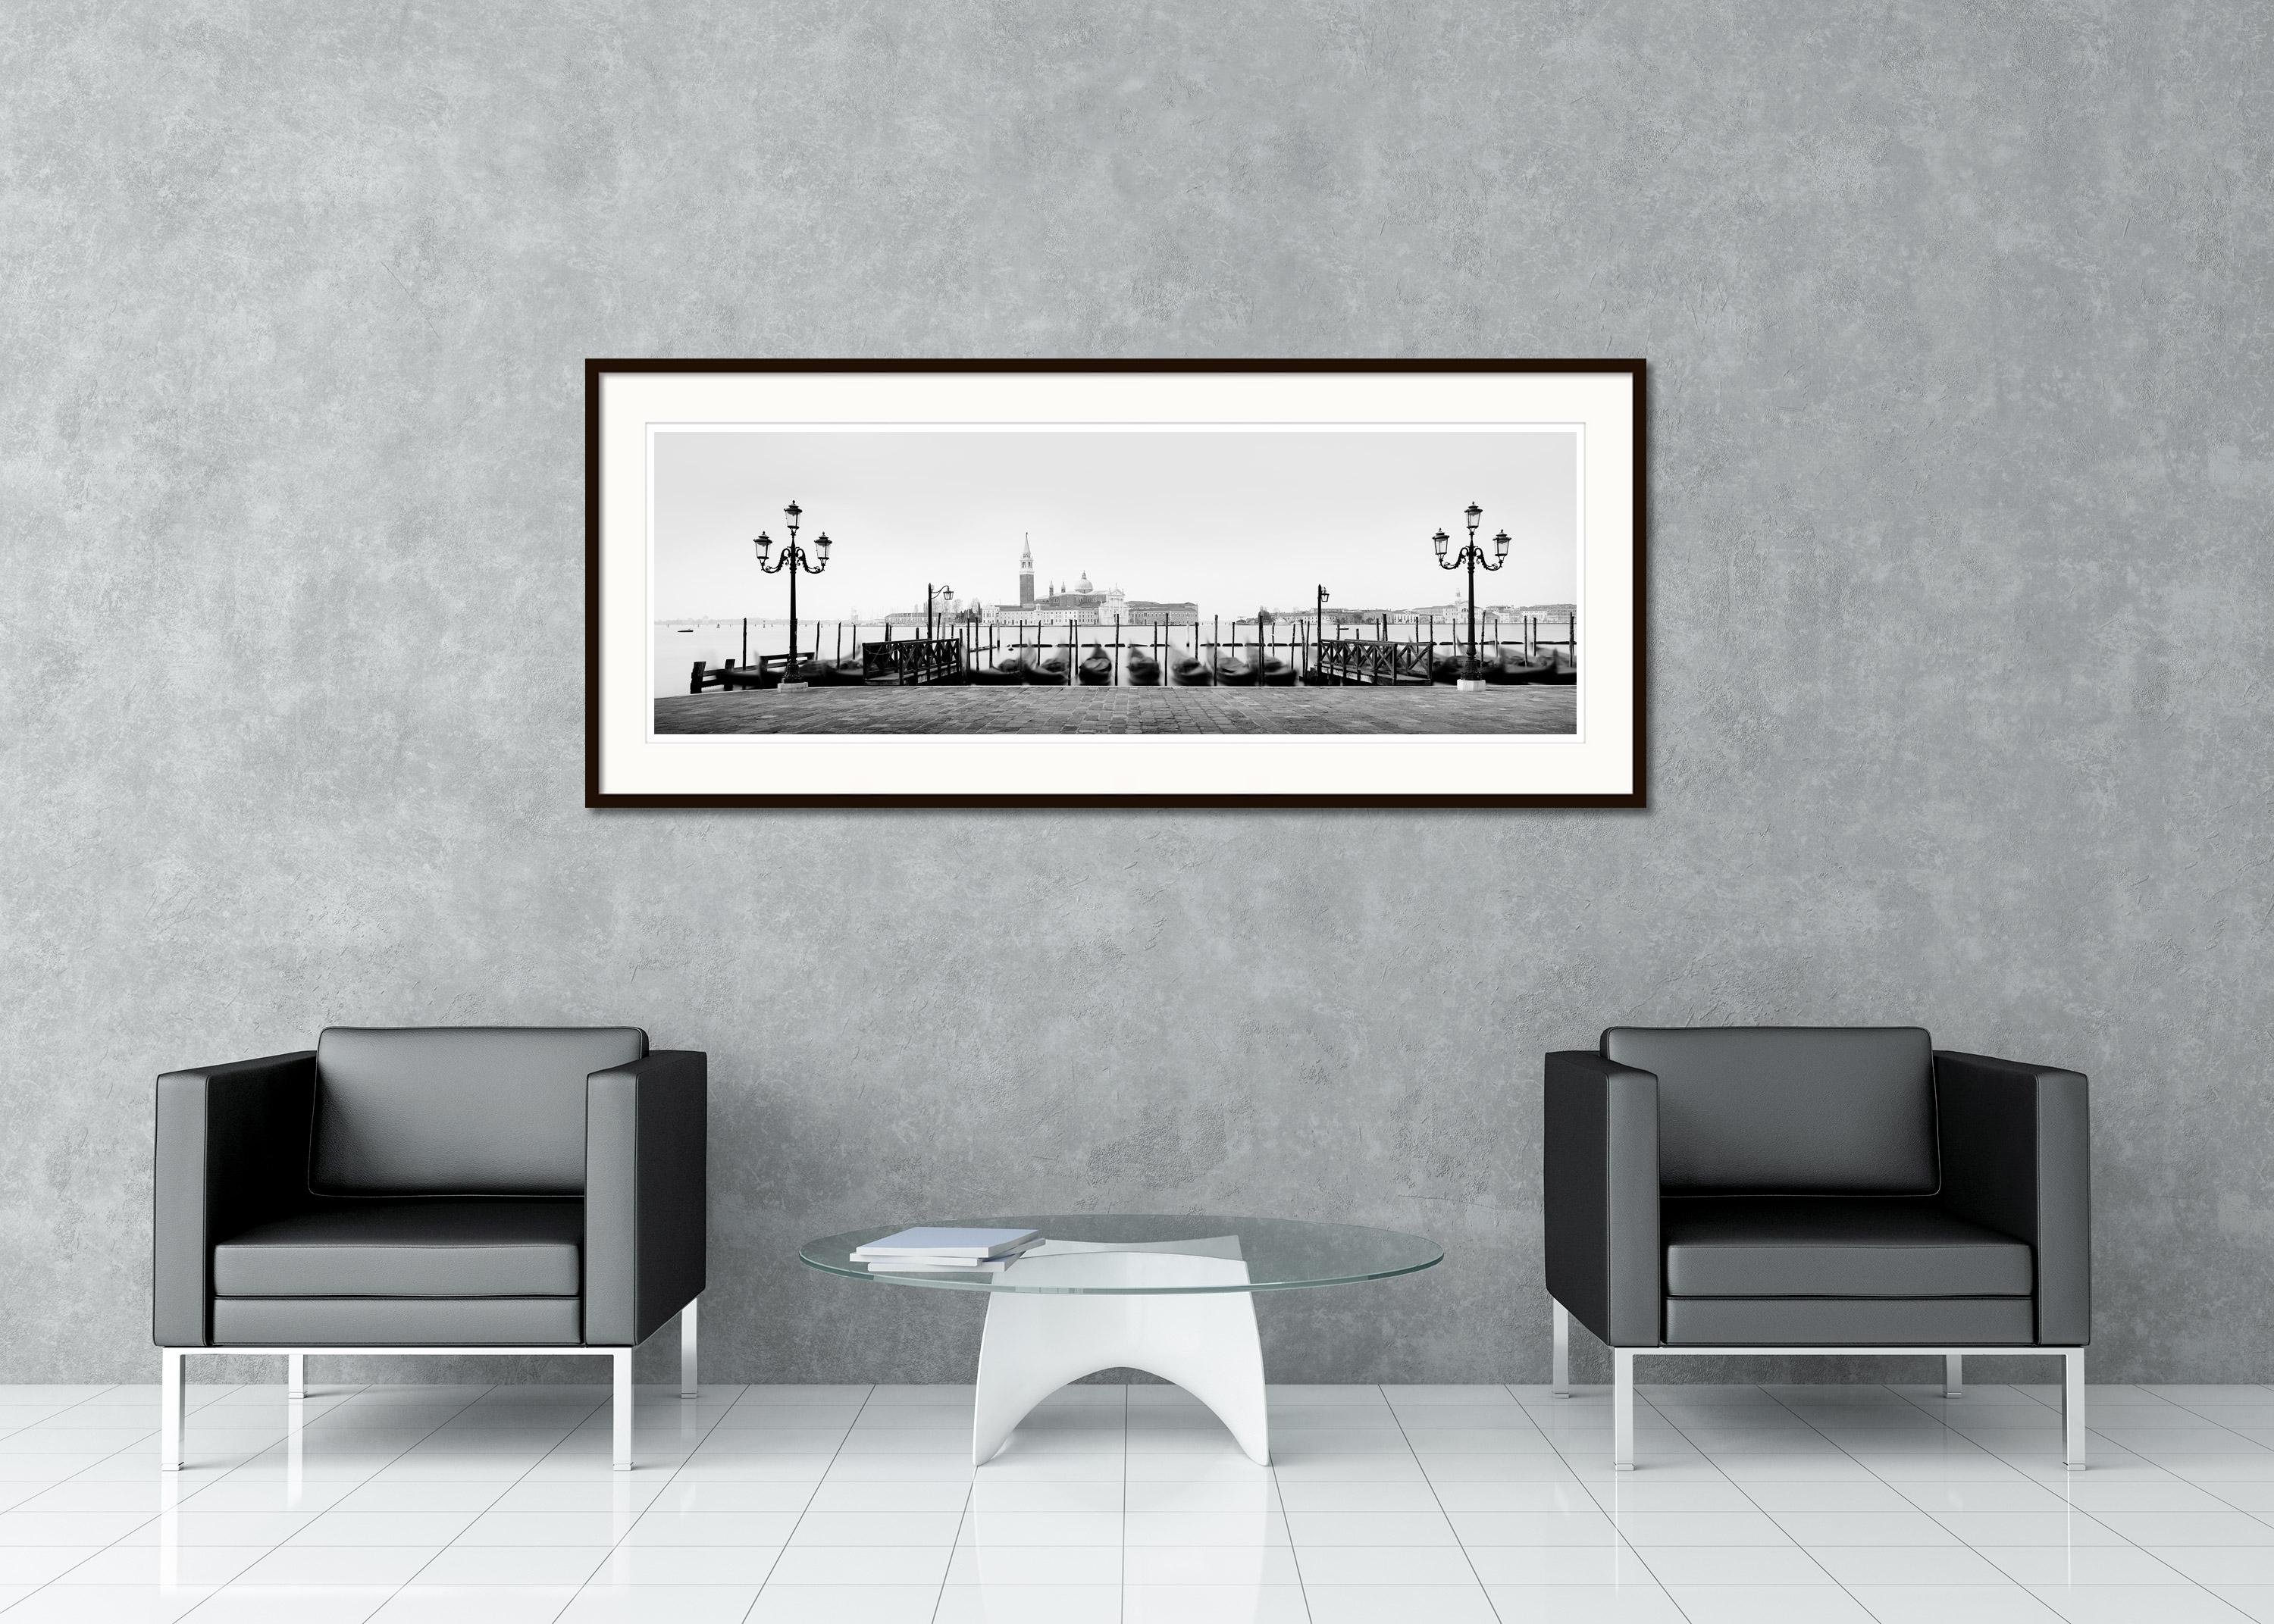 Panorama d'art en noir et blanc paysage - photographie de paysage urbain. Gondole devant la basilique sur le grand canal de Venise, Italie. Épreuve à l'encre pigmentaire d'archives, édition de 7 exemplaires. Signée, titrée, datée et numérotée par